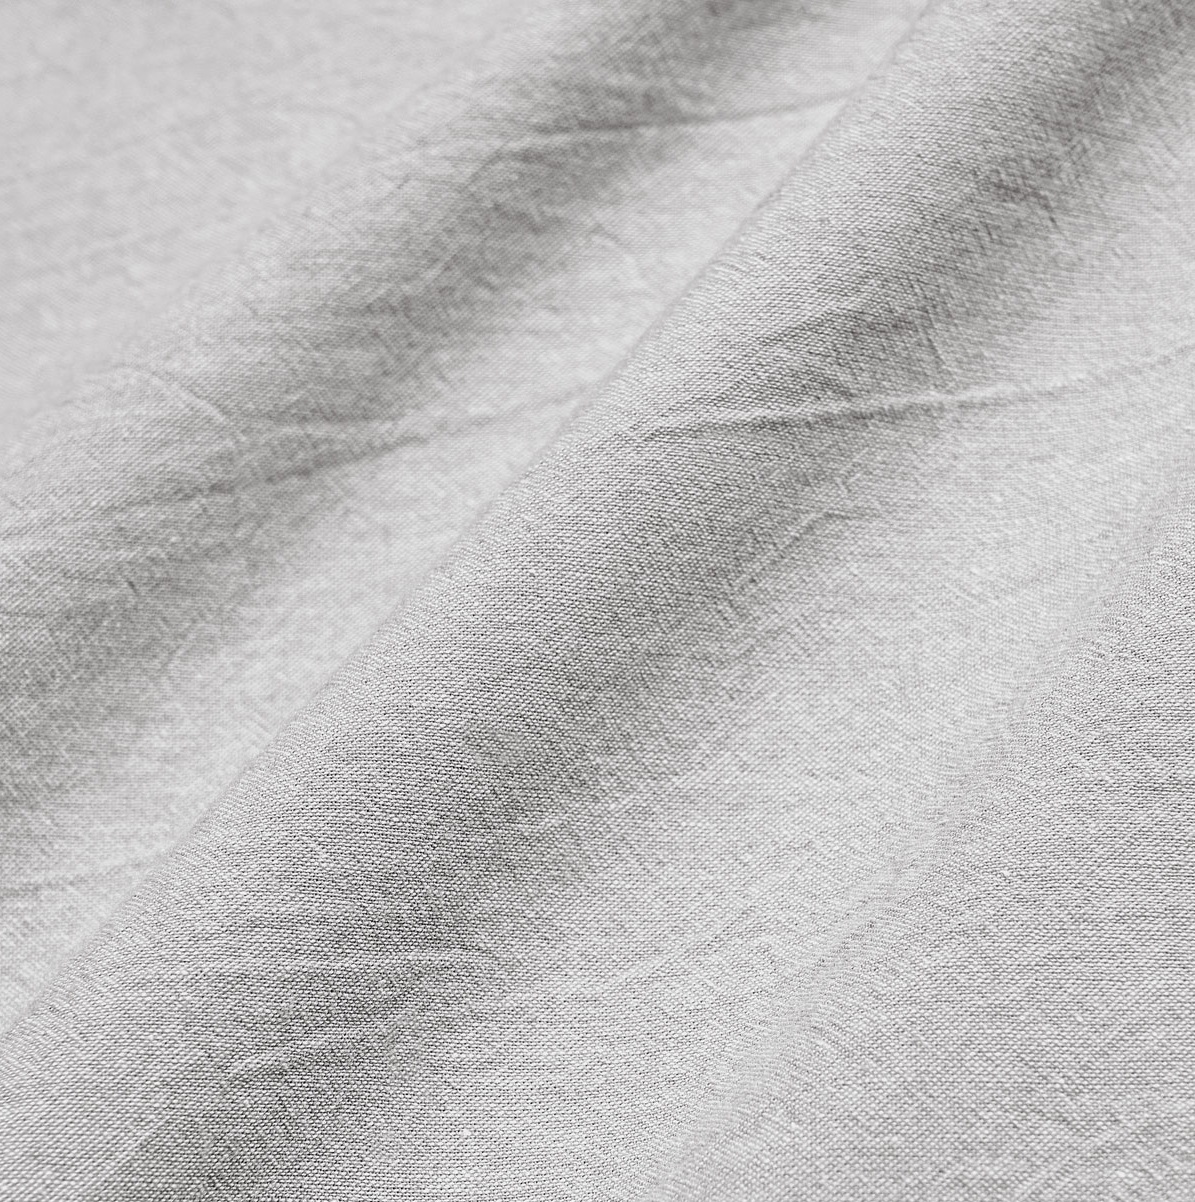 Комплект постельного белья Prime Prive Смоген Двуспальный кинг сайз светло-серый, размер Кинг сайз - фото 12